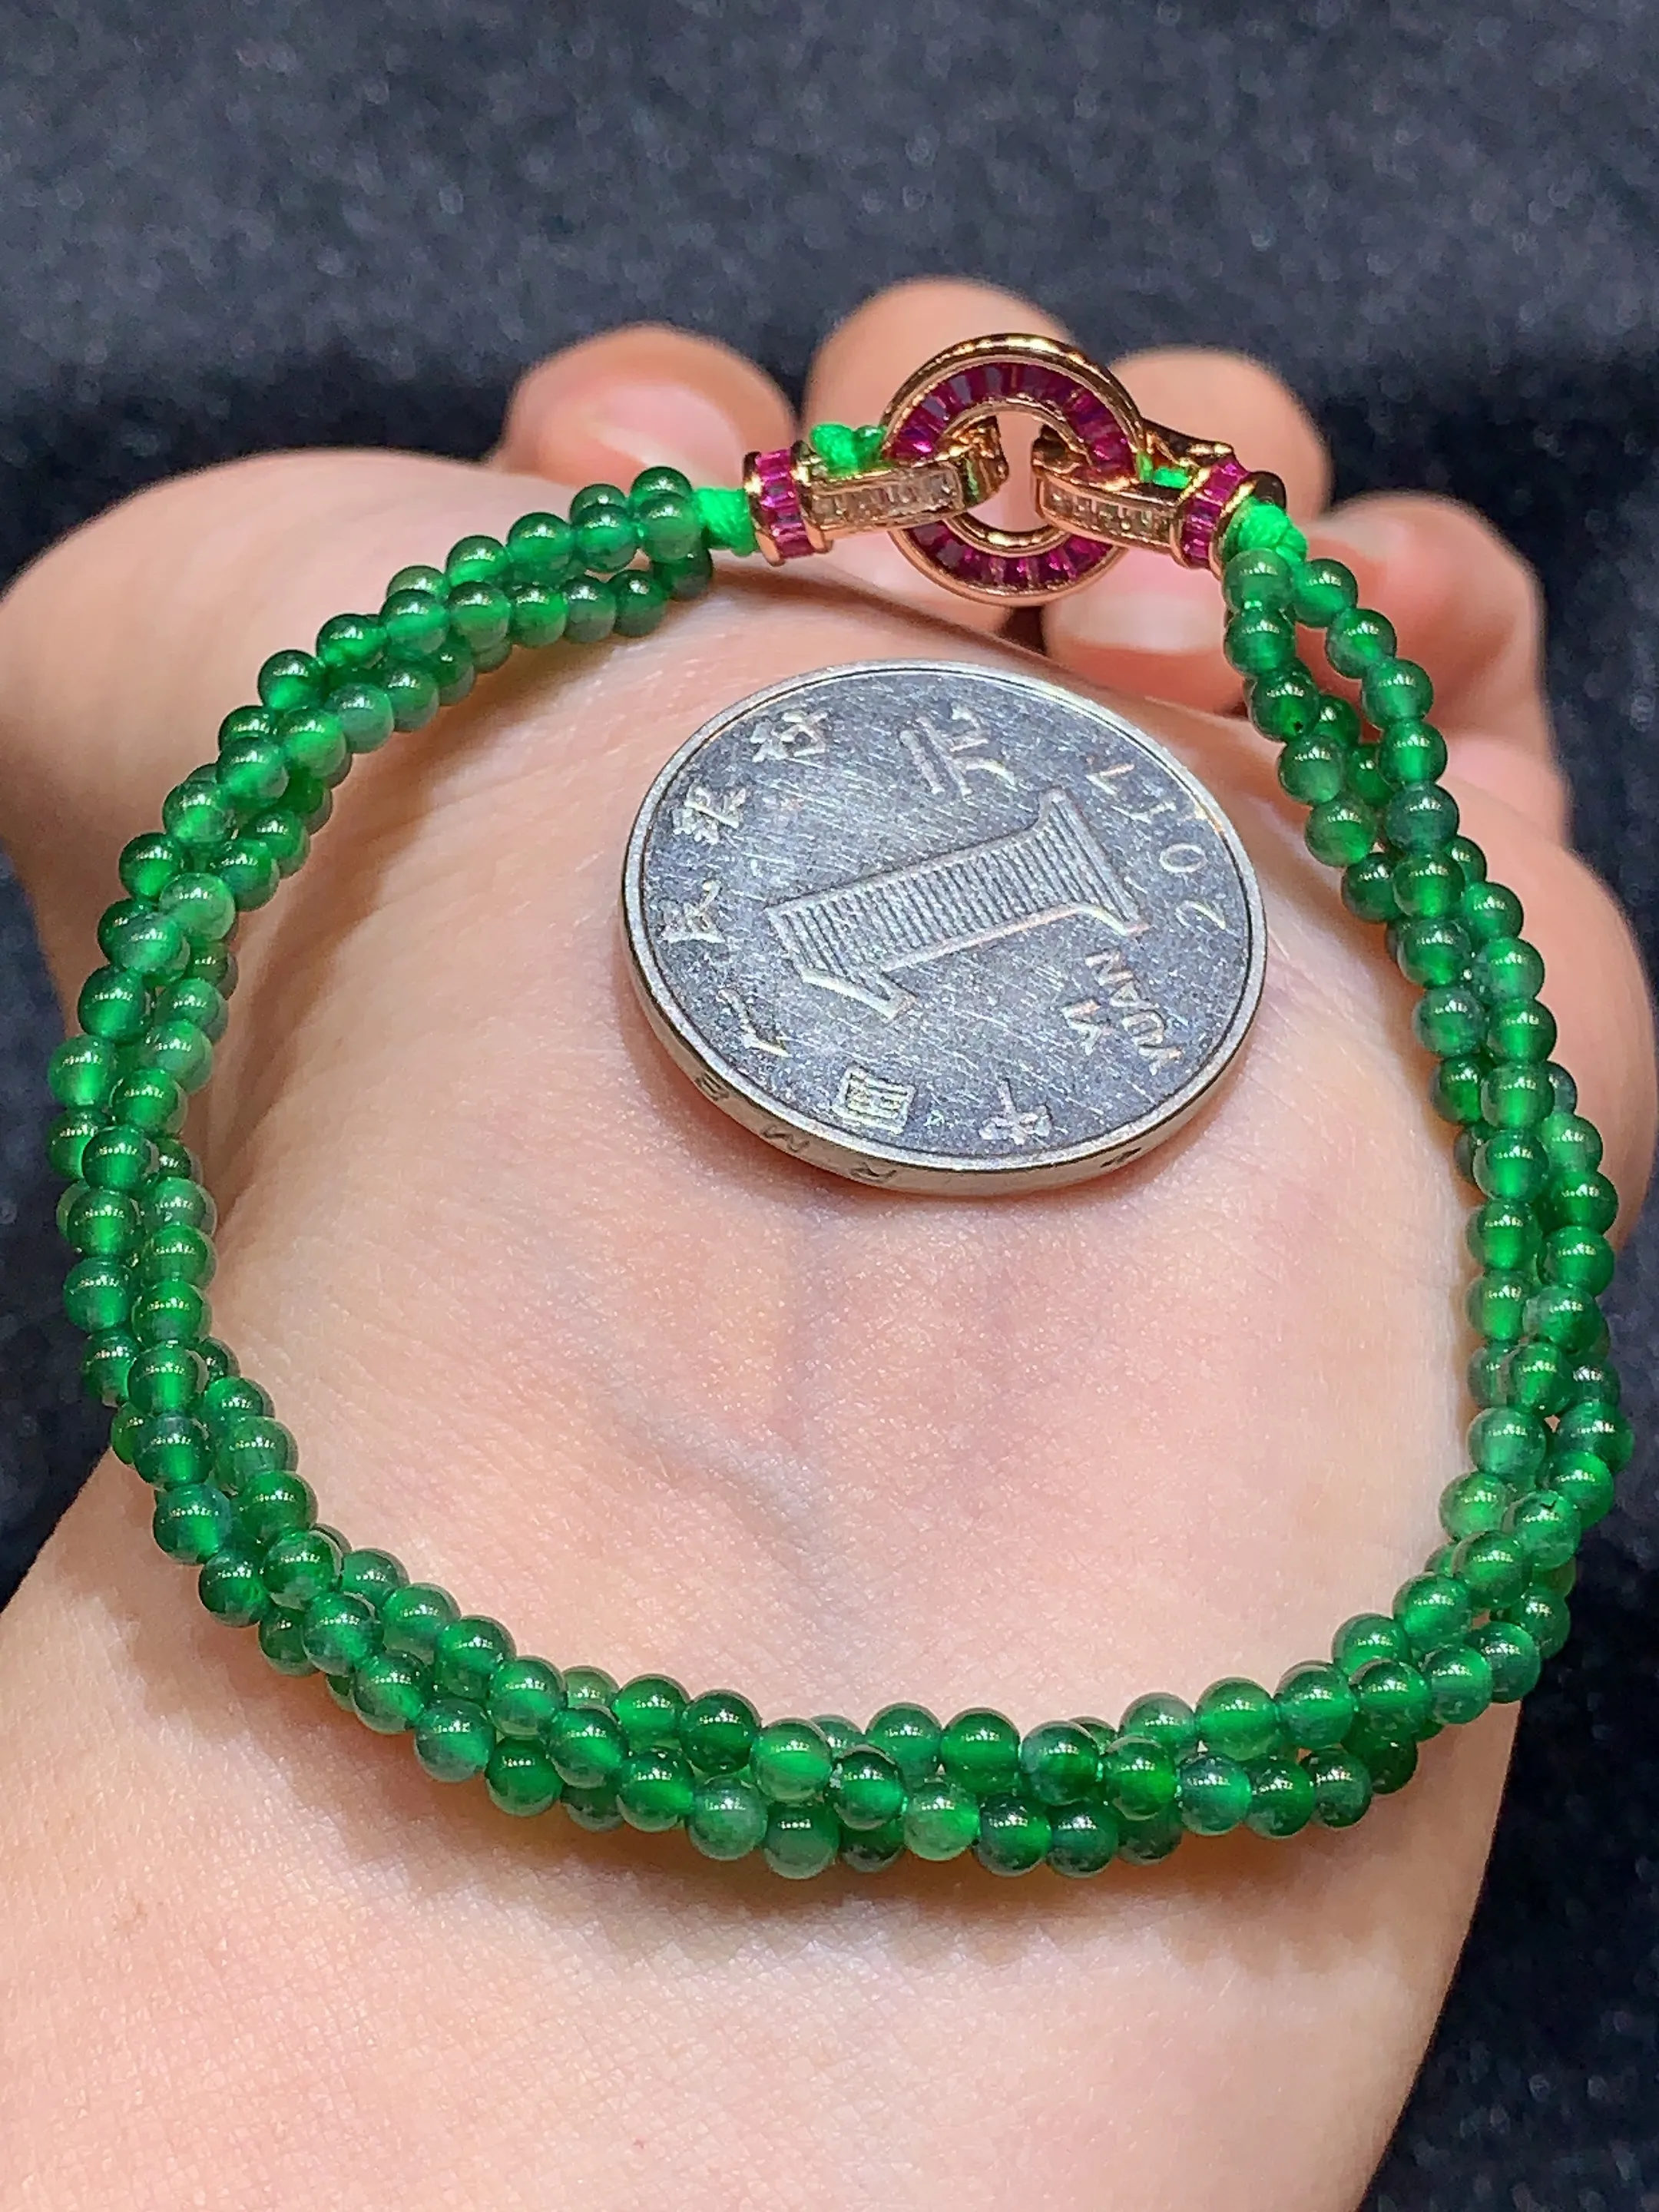 满绿圆珠手链 玉质细腻   色泽艳丽 圆润饱满 款式新颖时尚精美 取一尺寸2.8